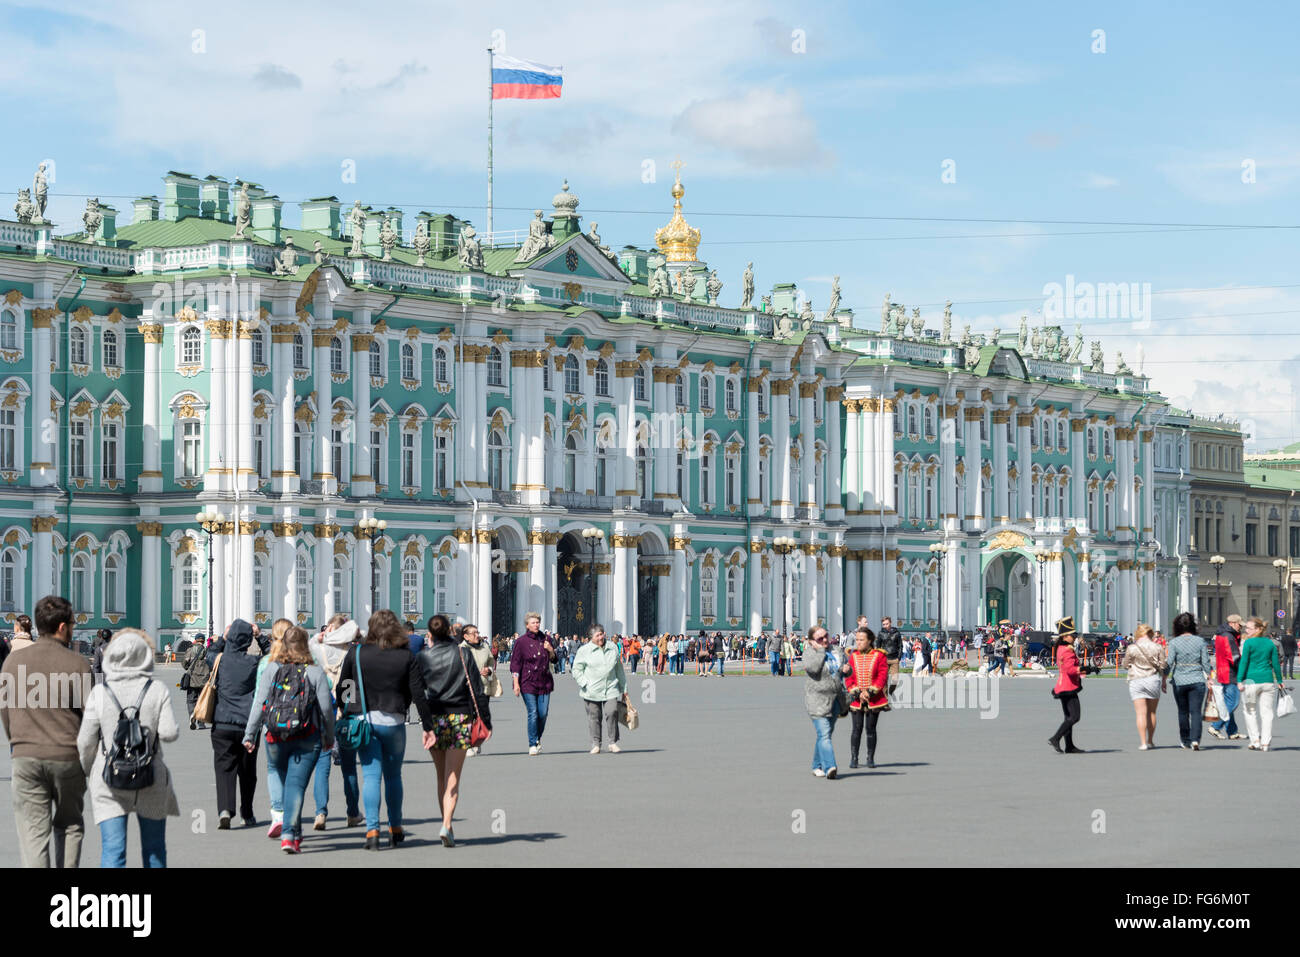 Xviii secolo stato Hermitage Museum, la Piazza del Palazzo San Pietroburgo, regione nord-occidentale, Federazione russa Foto Stock